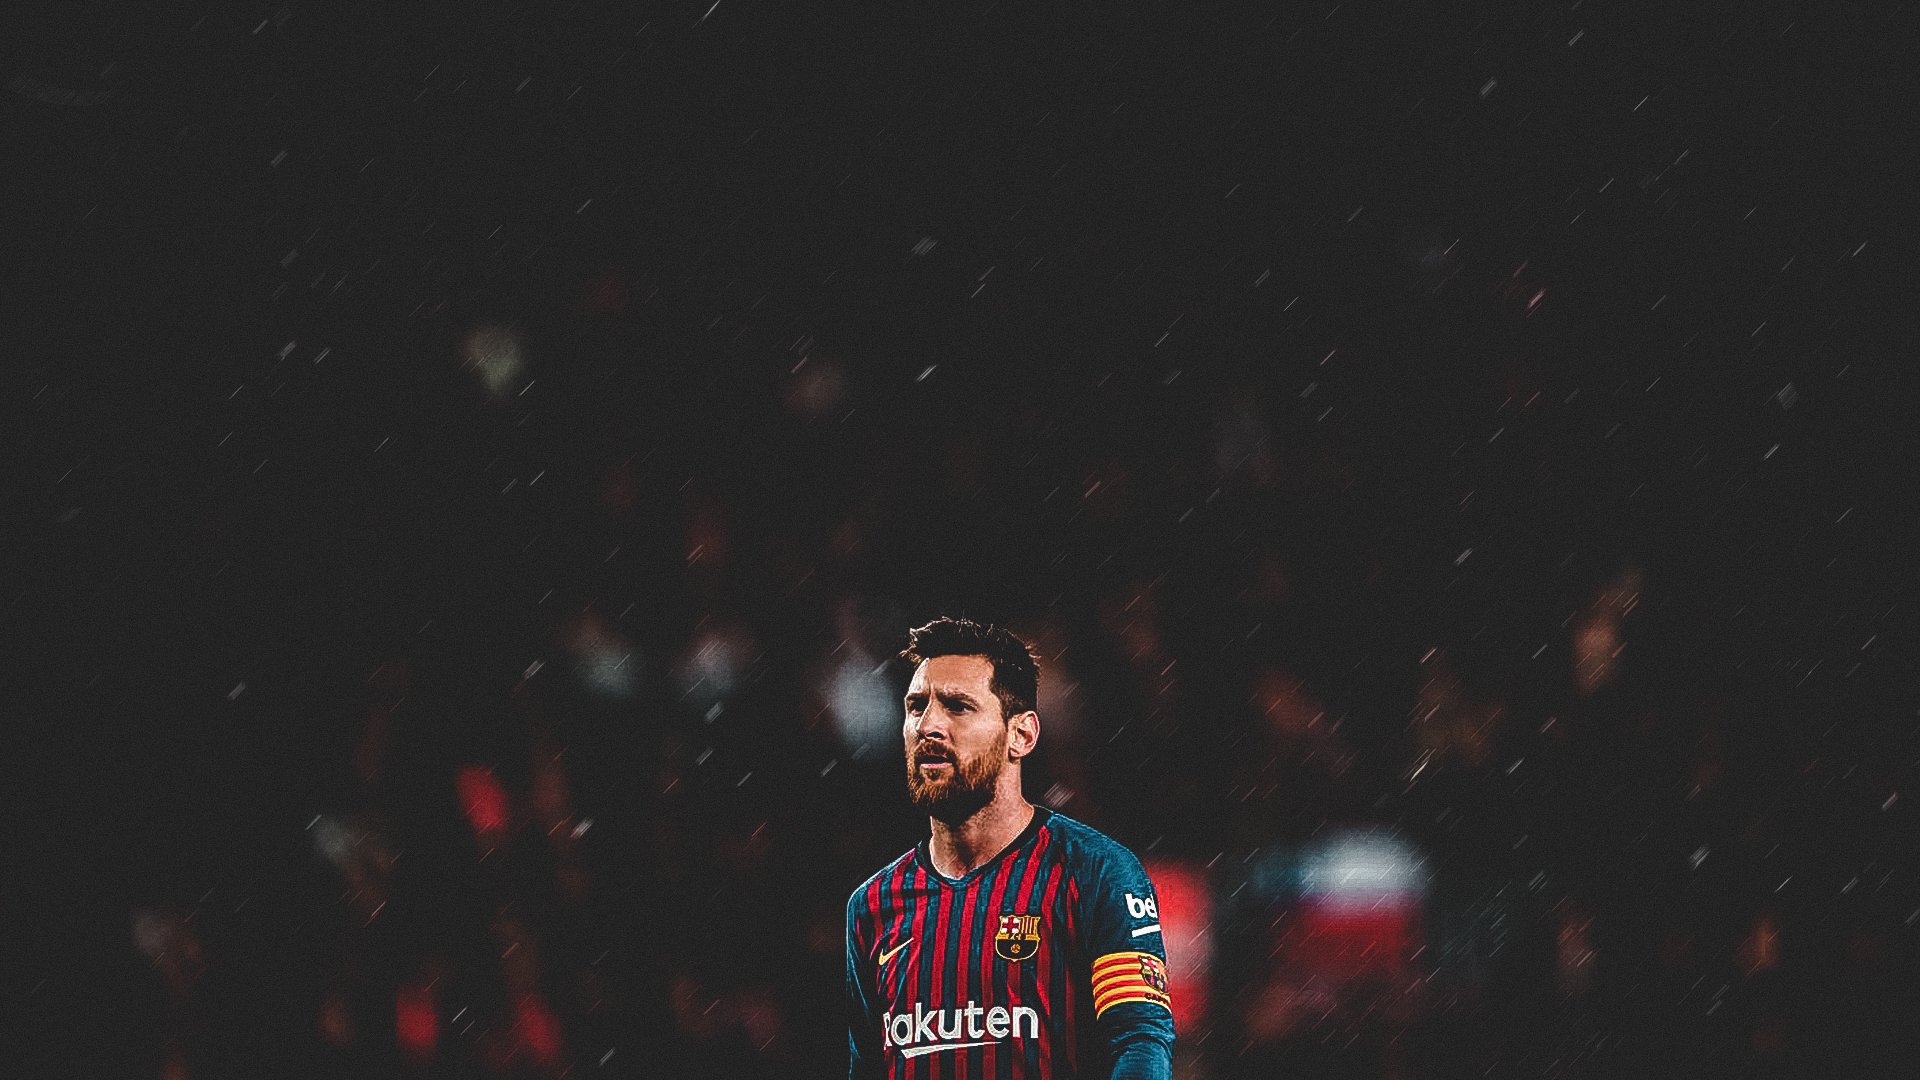 Hình nền máy tính Lionel Messi với các hình ảnh đẹp mắt của ngôi sao bóng đá hàng đầu thế giới sẽ khiến những fan hâm mộ chân chính của anh ta phấn khích. Hãy trang trí cho màn hình của bạn với hình ảnh đẹp của Messi ngay bây giờ!